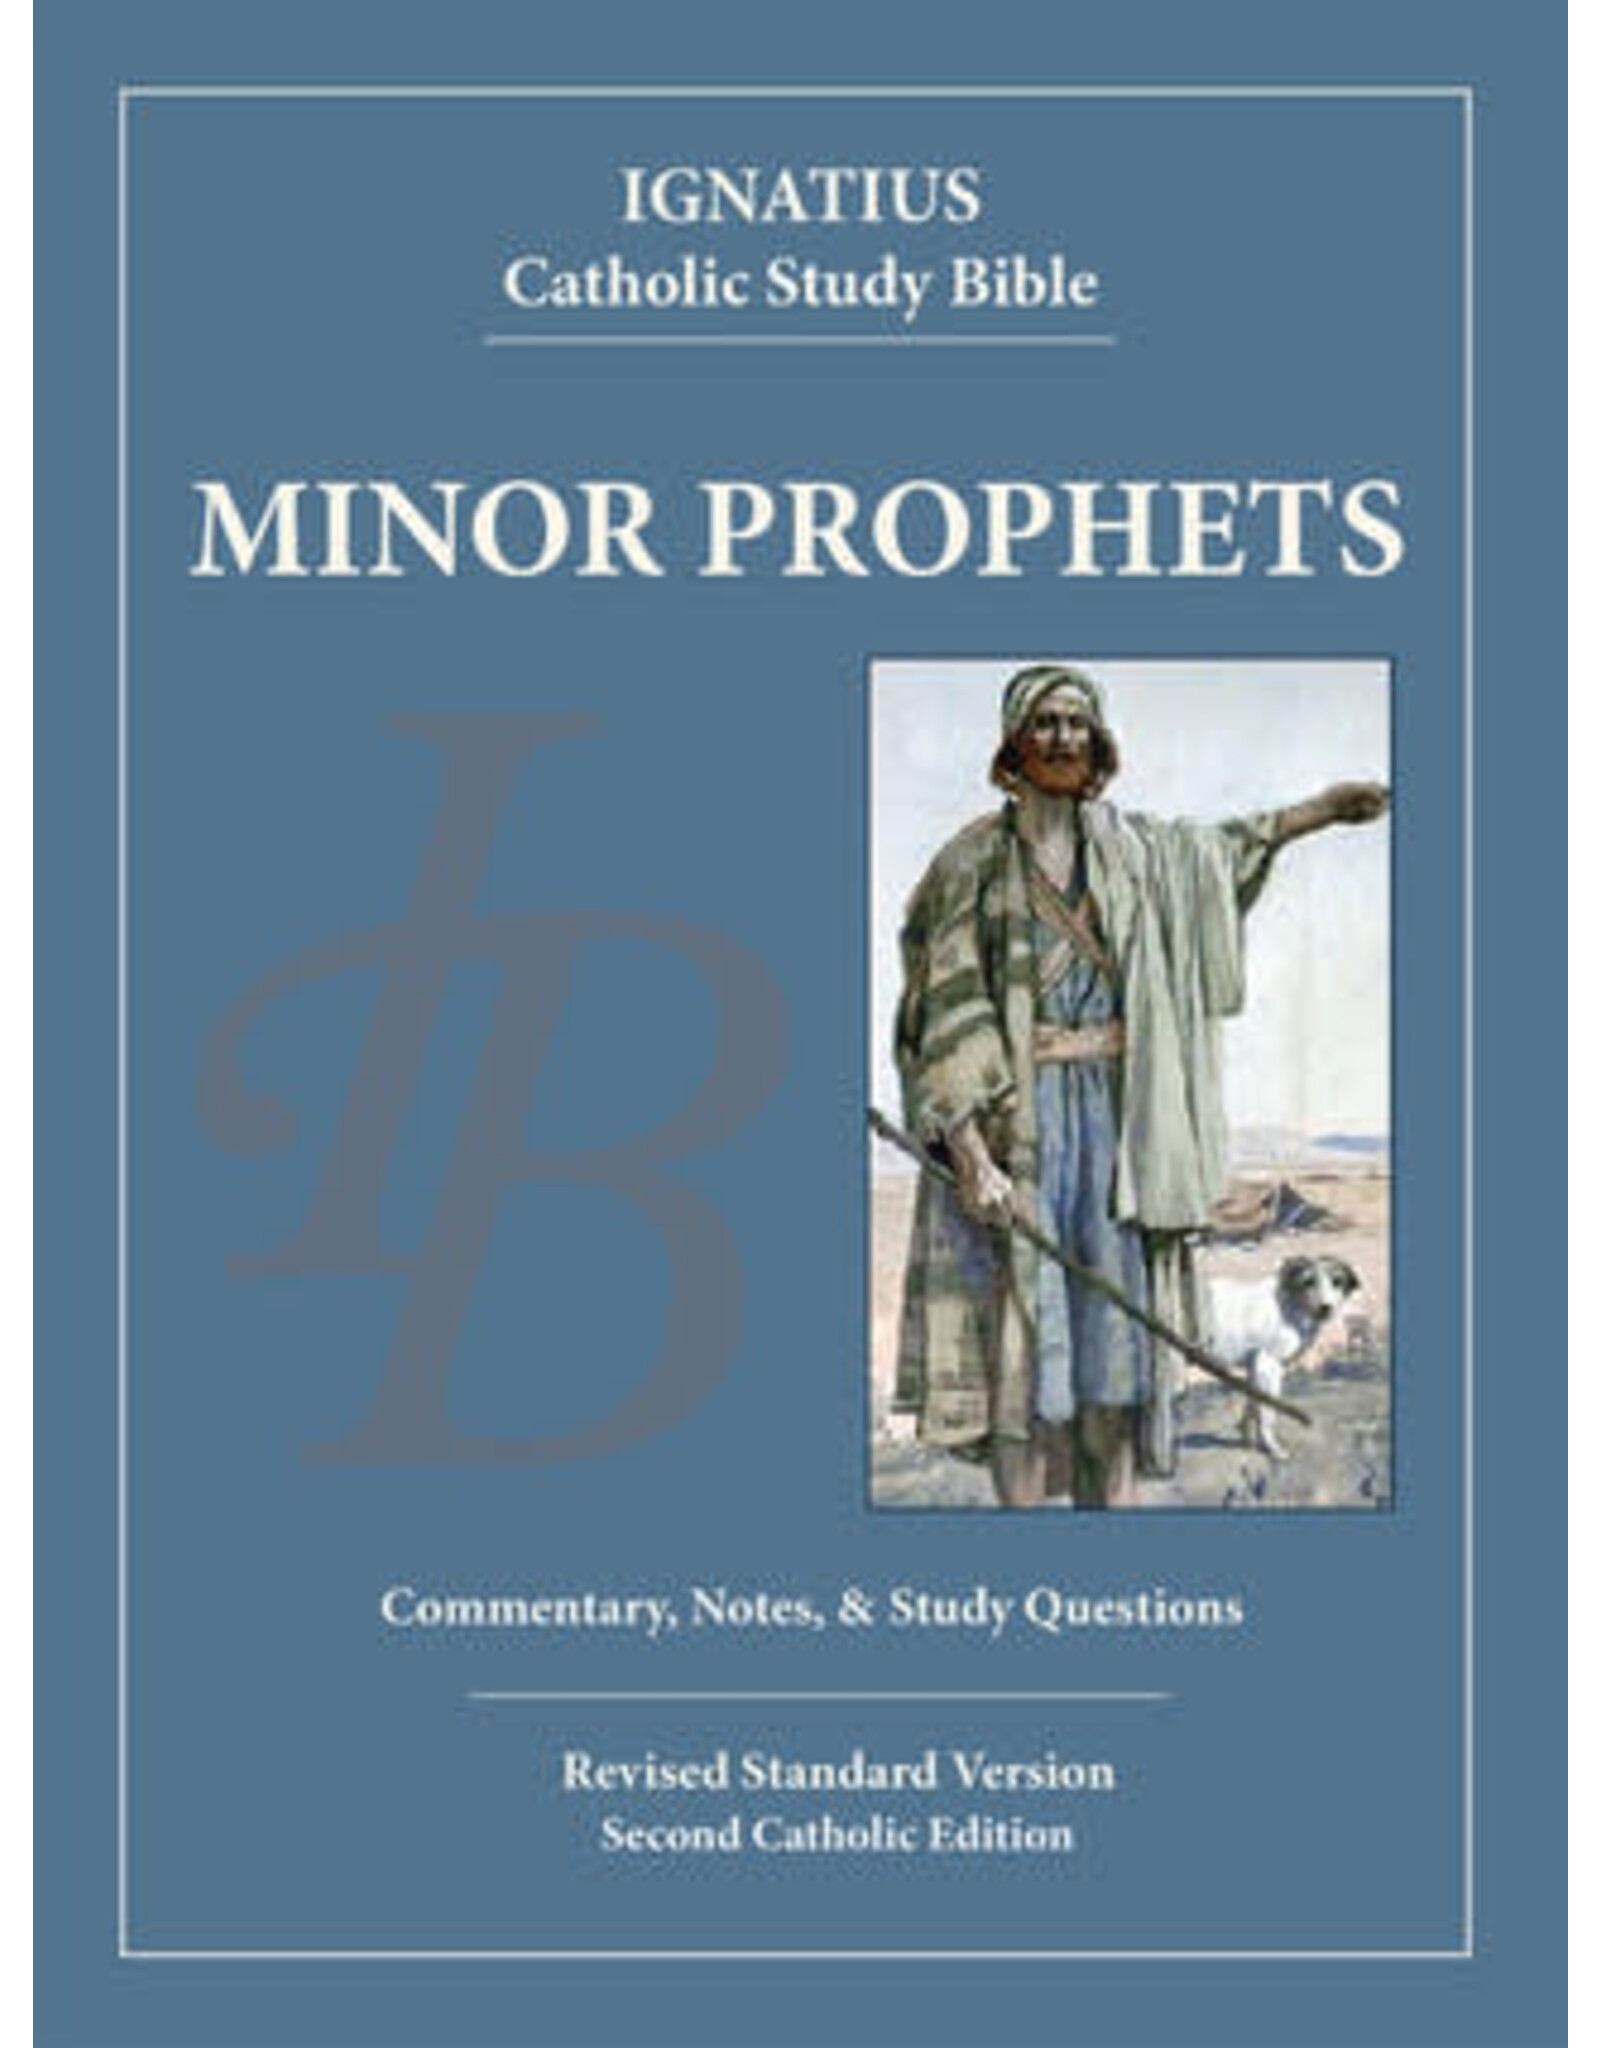 Ignatius Press RSV Ignatius Catholic Study Bible-Minor Prophets